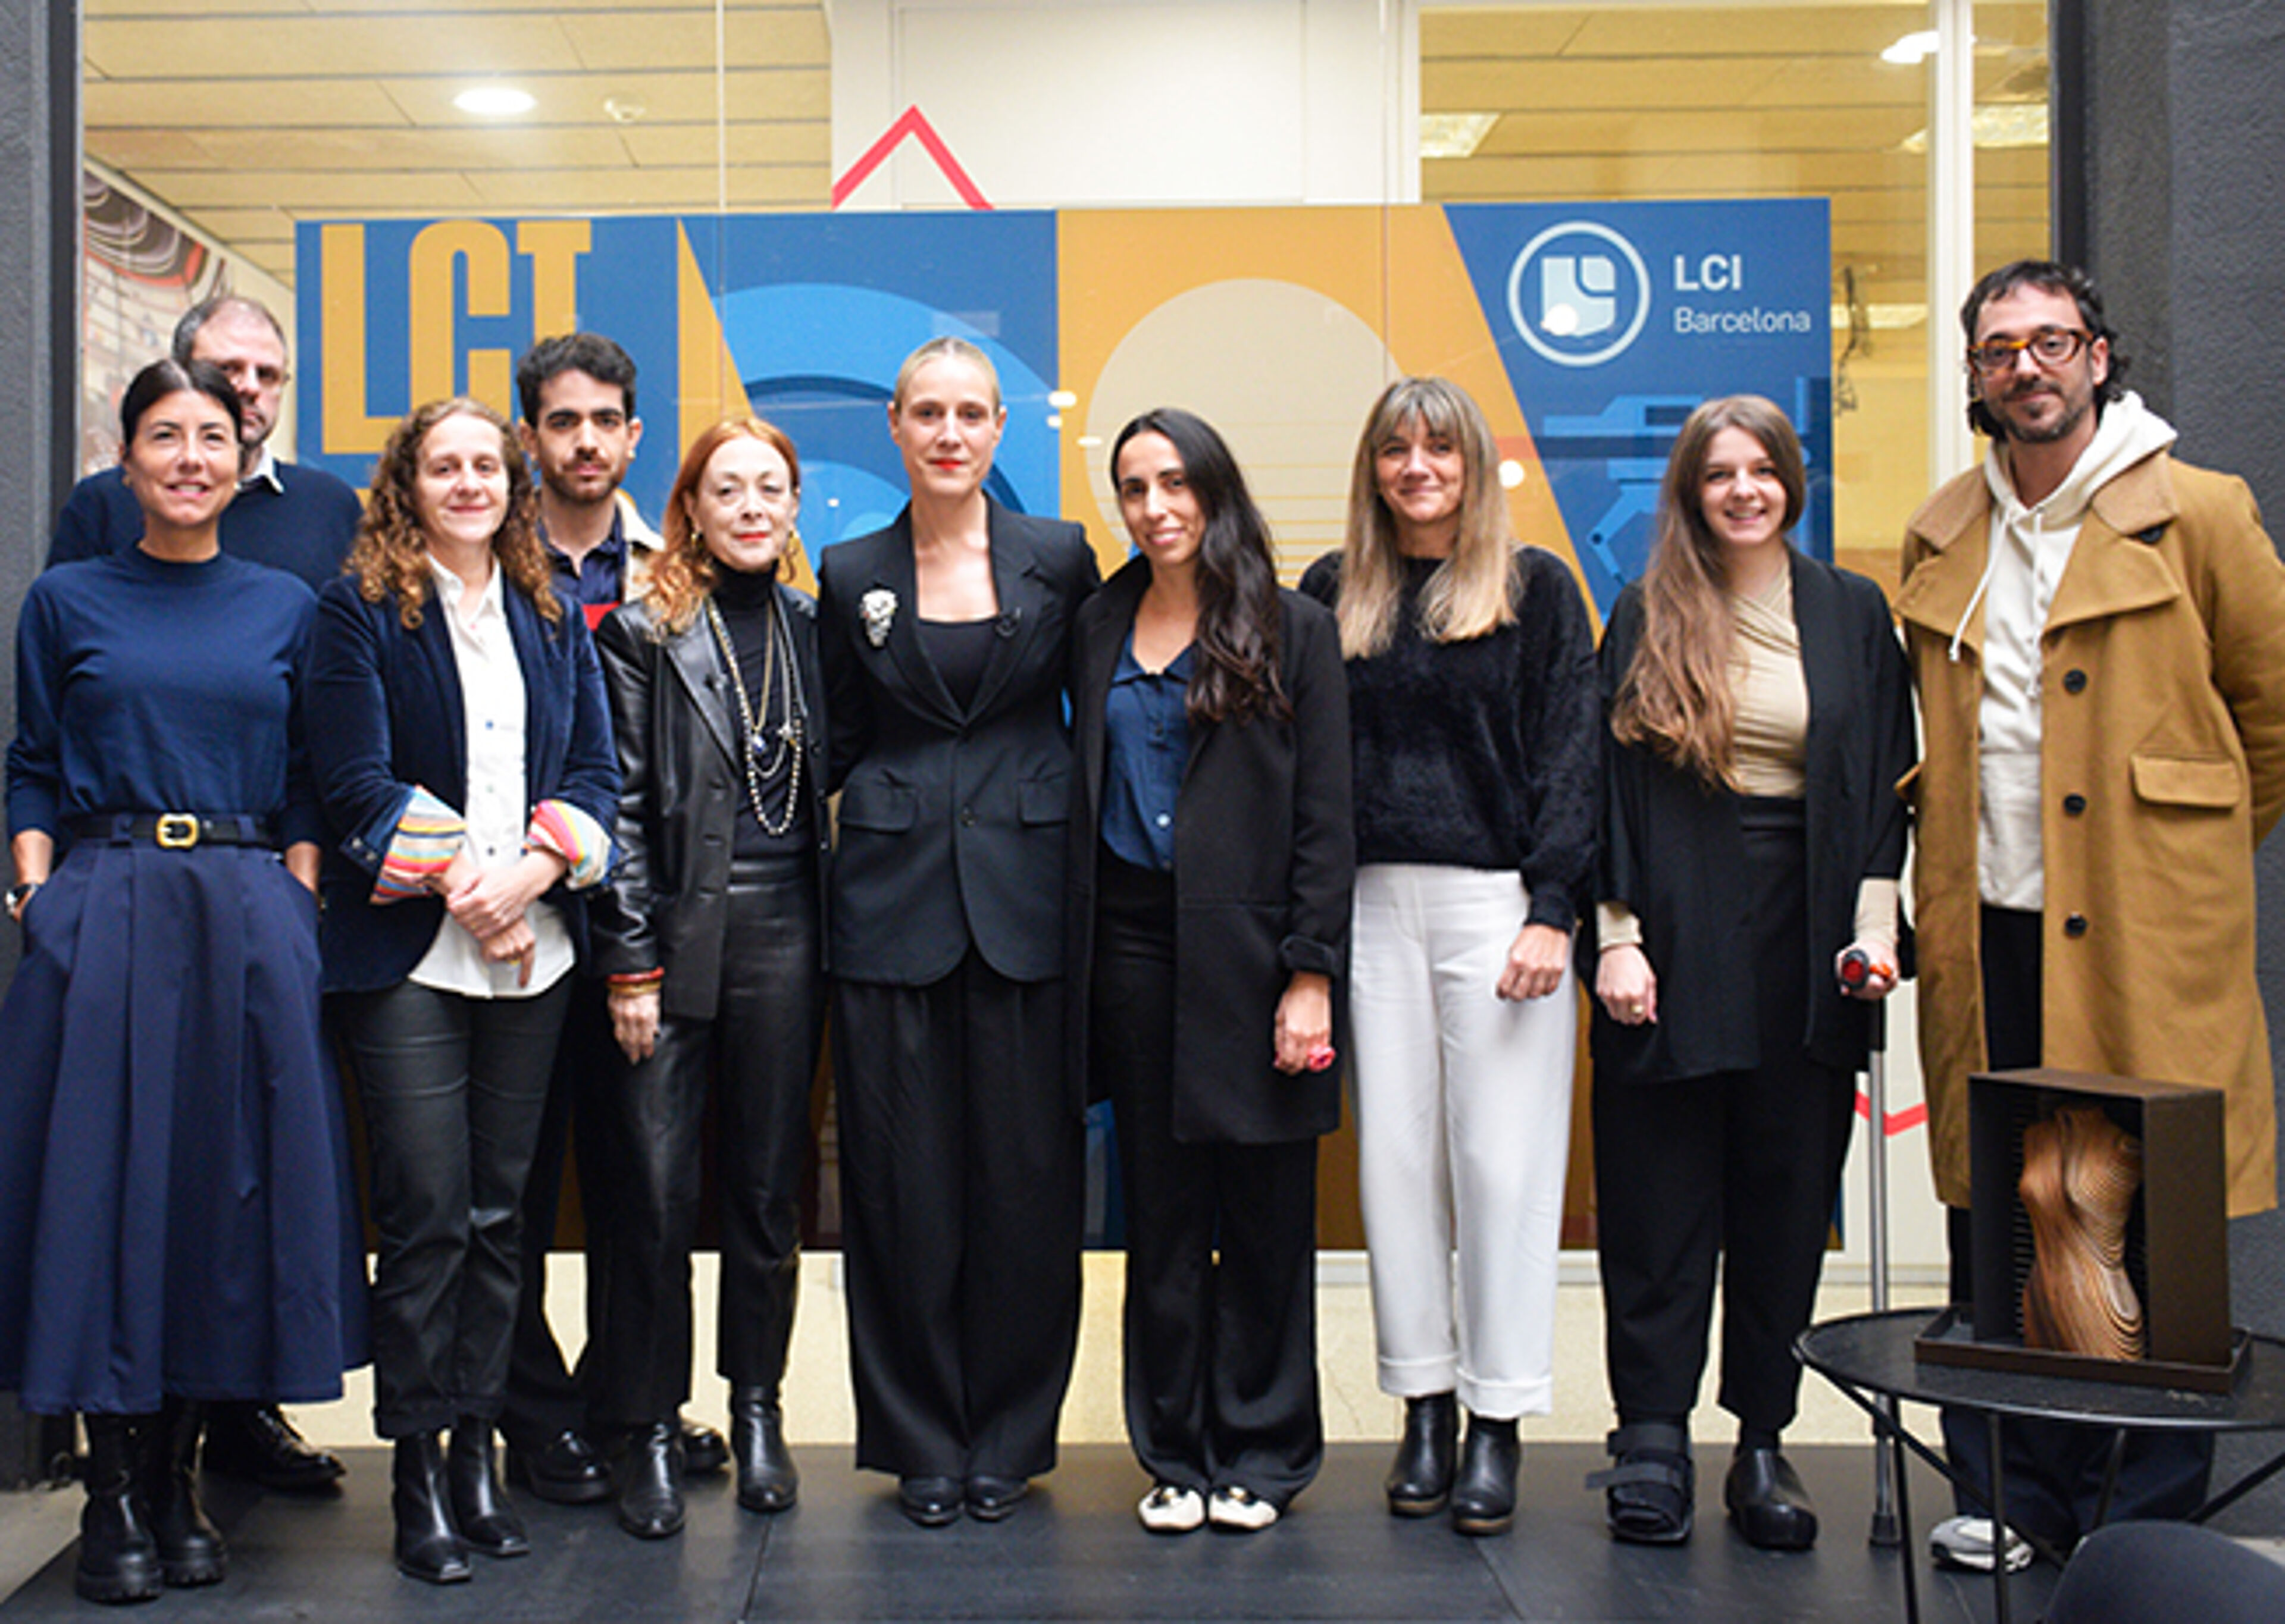 Un grup de professionals posant junts per a una foto d'equip a LCI Barcelona, mostrant una barreja de vestits casuals i de negocis.